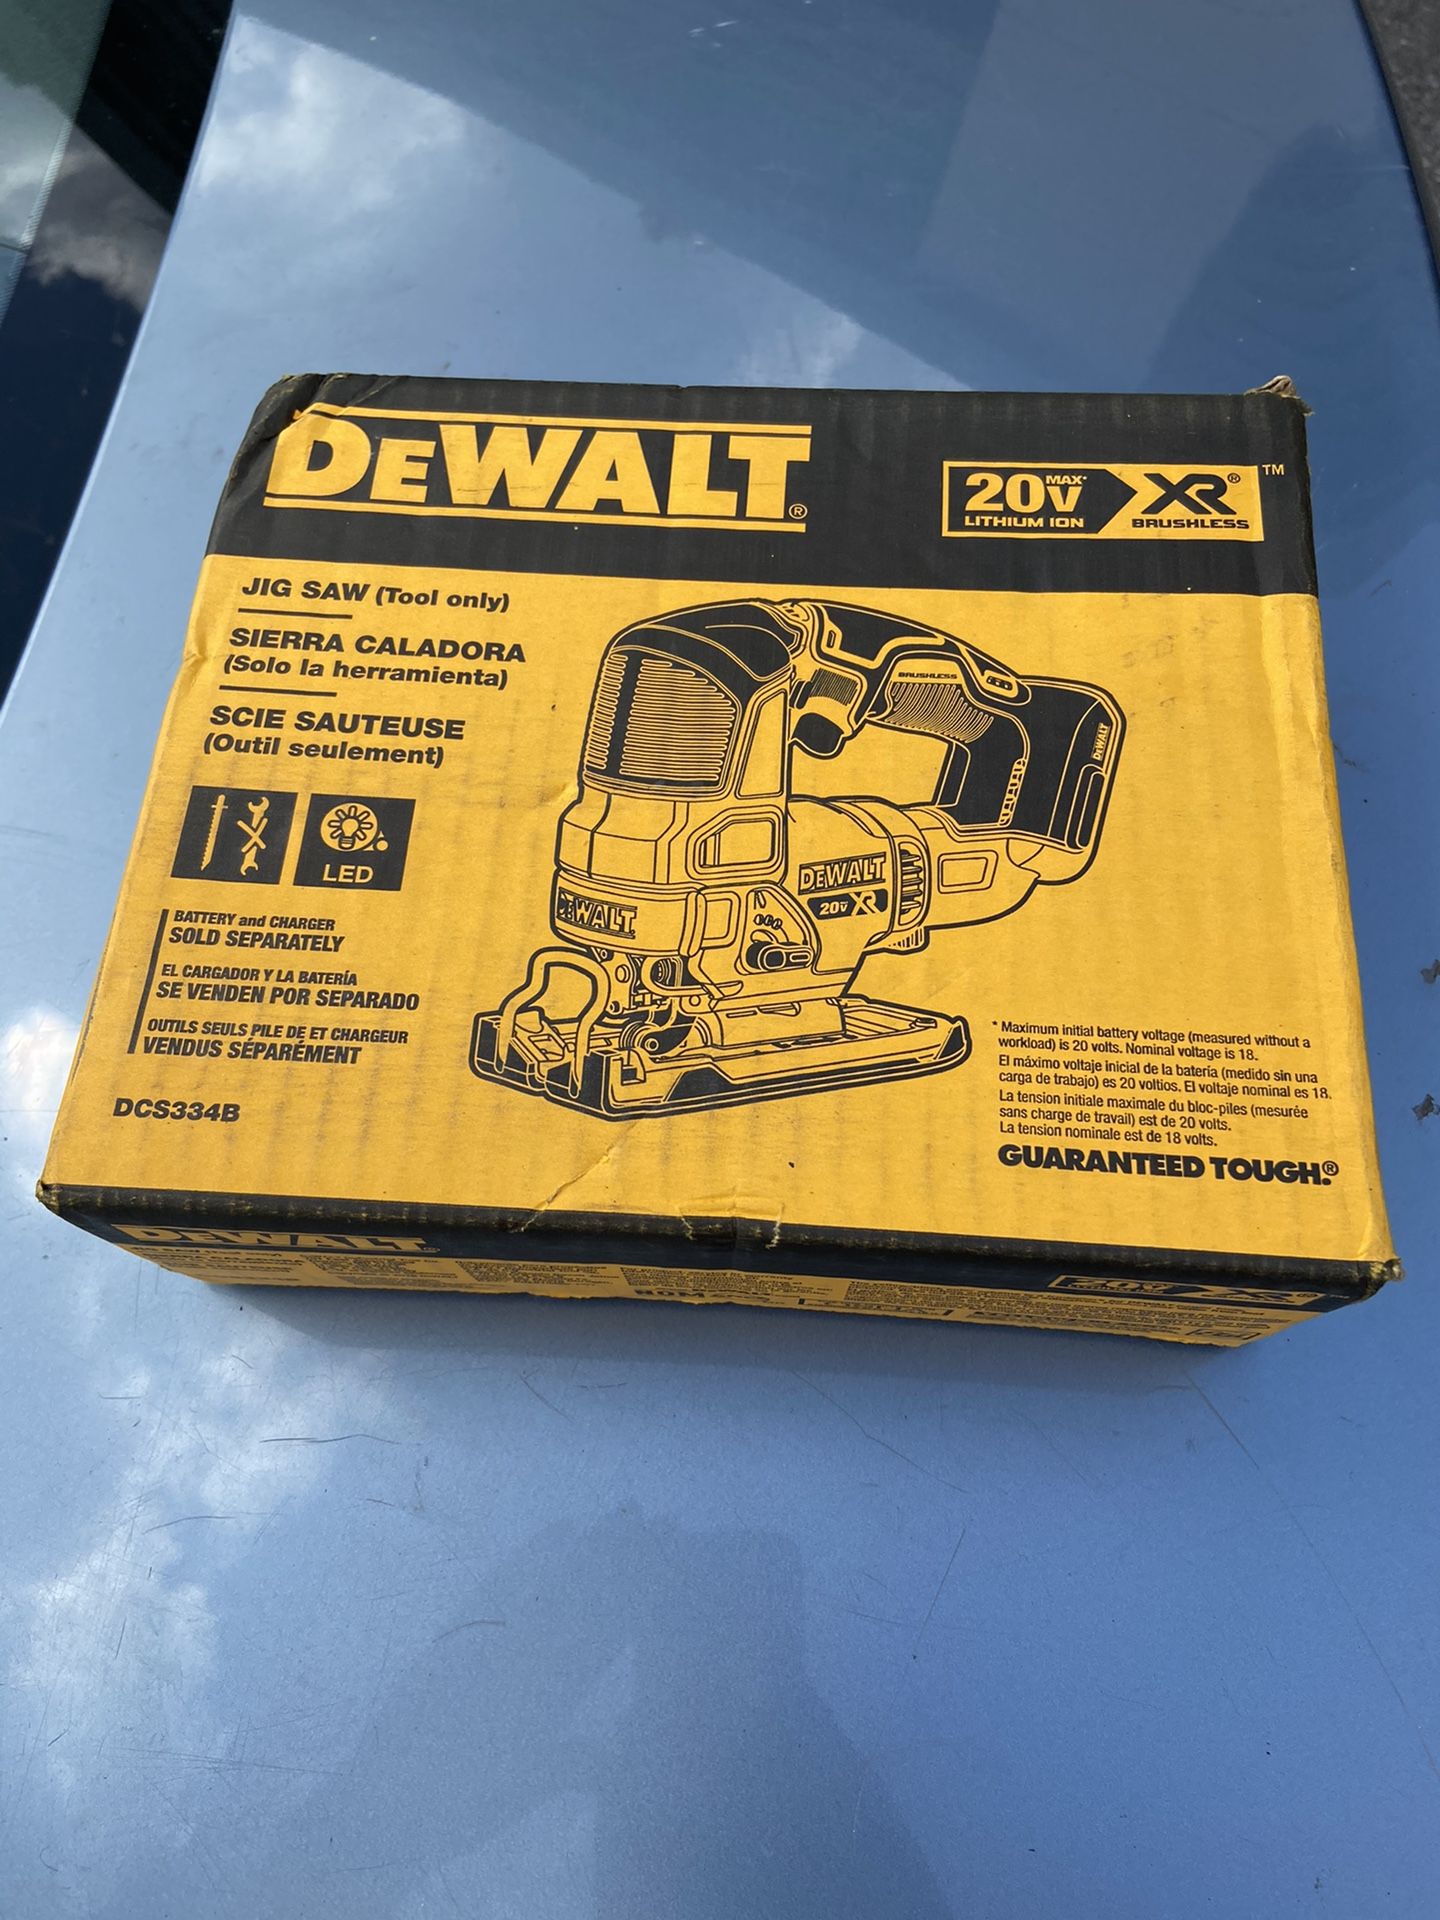 Dewalt 20v XR jig saw (tool only)